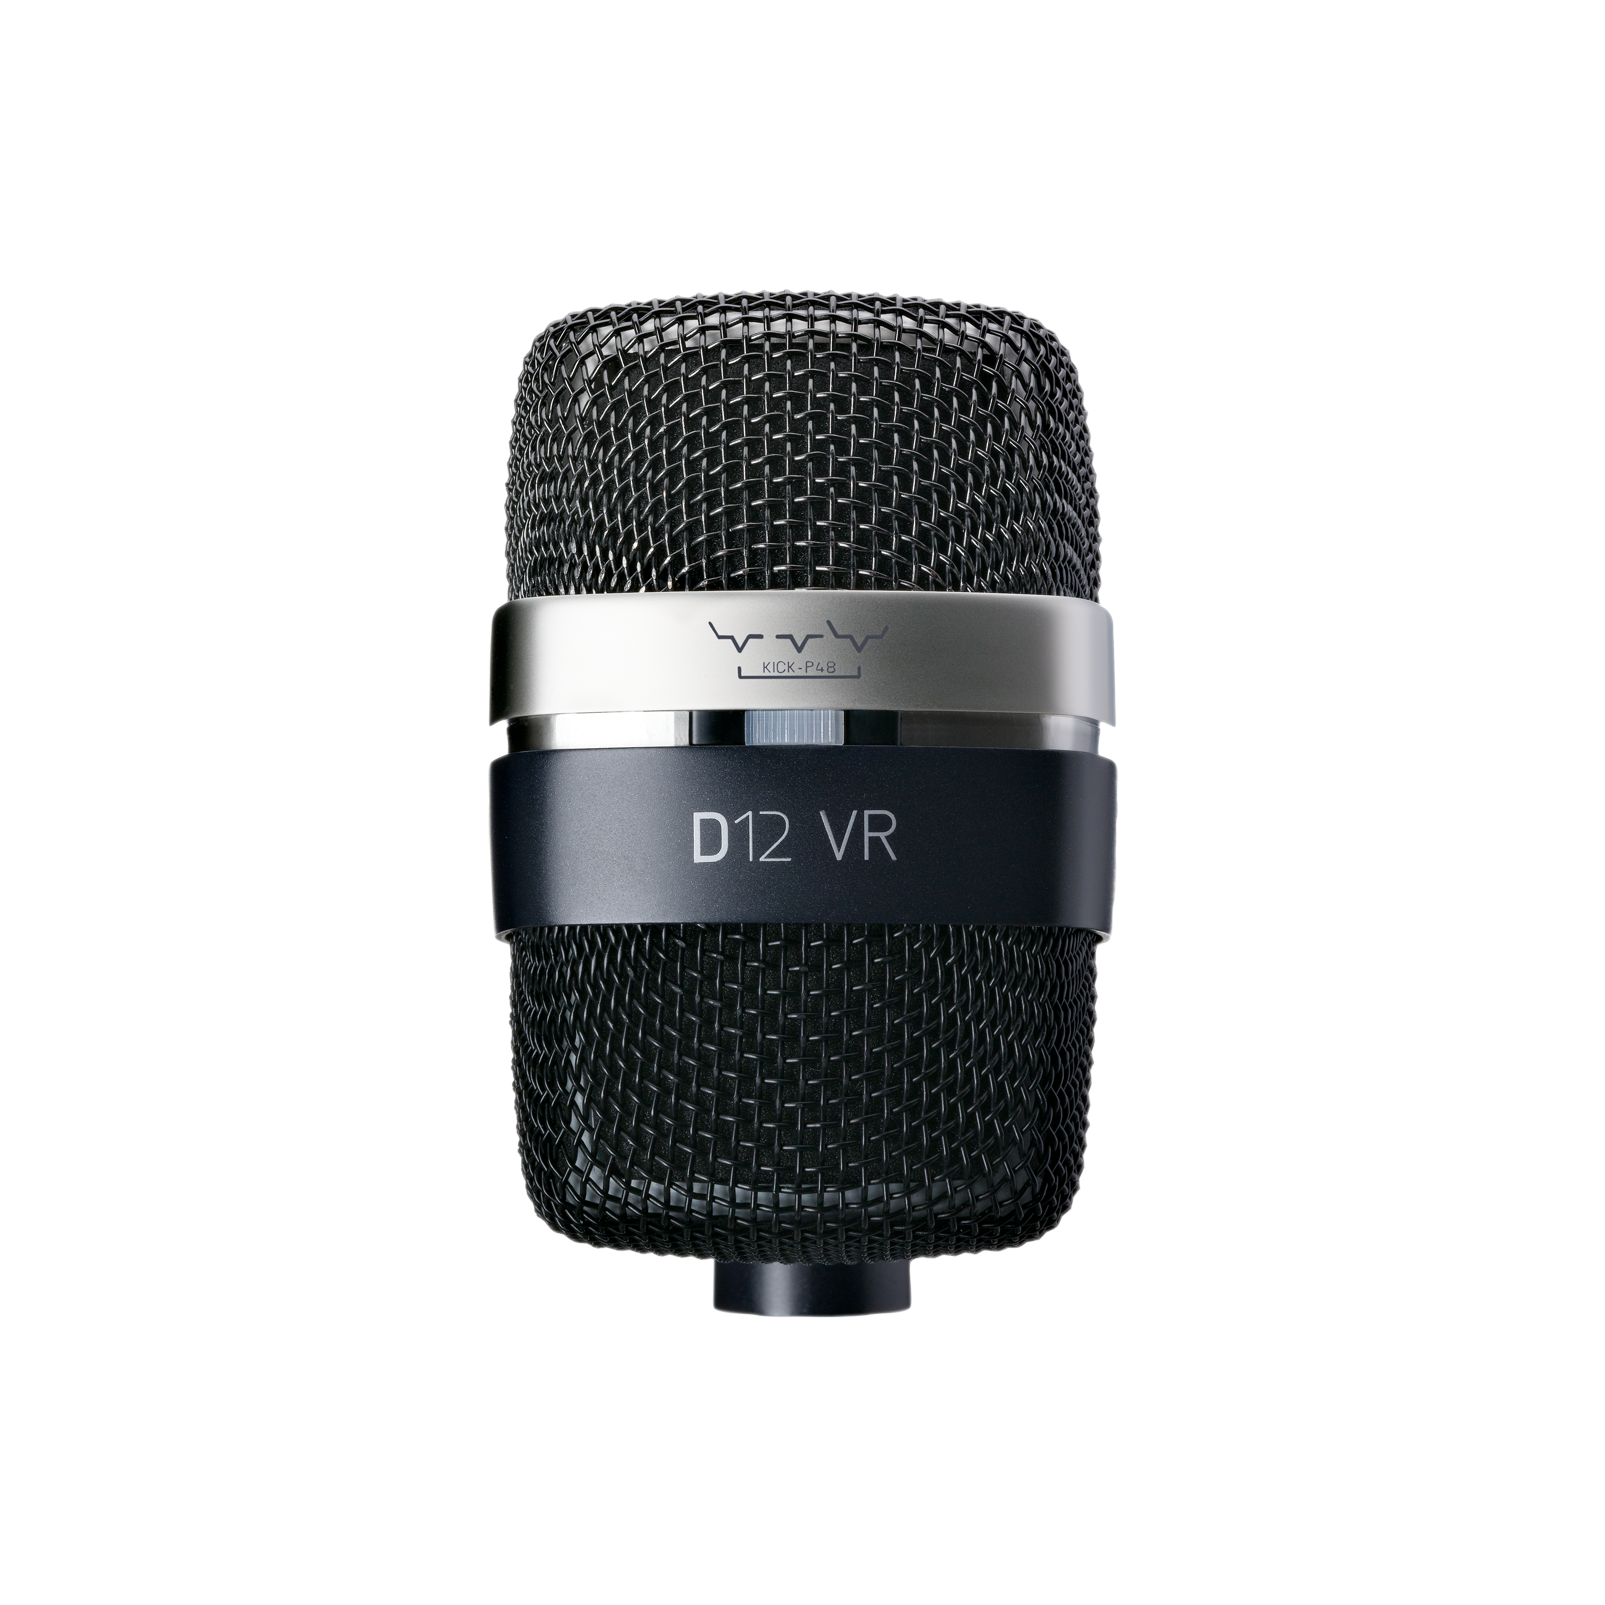 D12 VR - Black - Reference large-diaphragm dynamic microphone - Detailshot 1